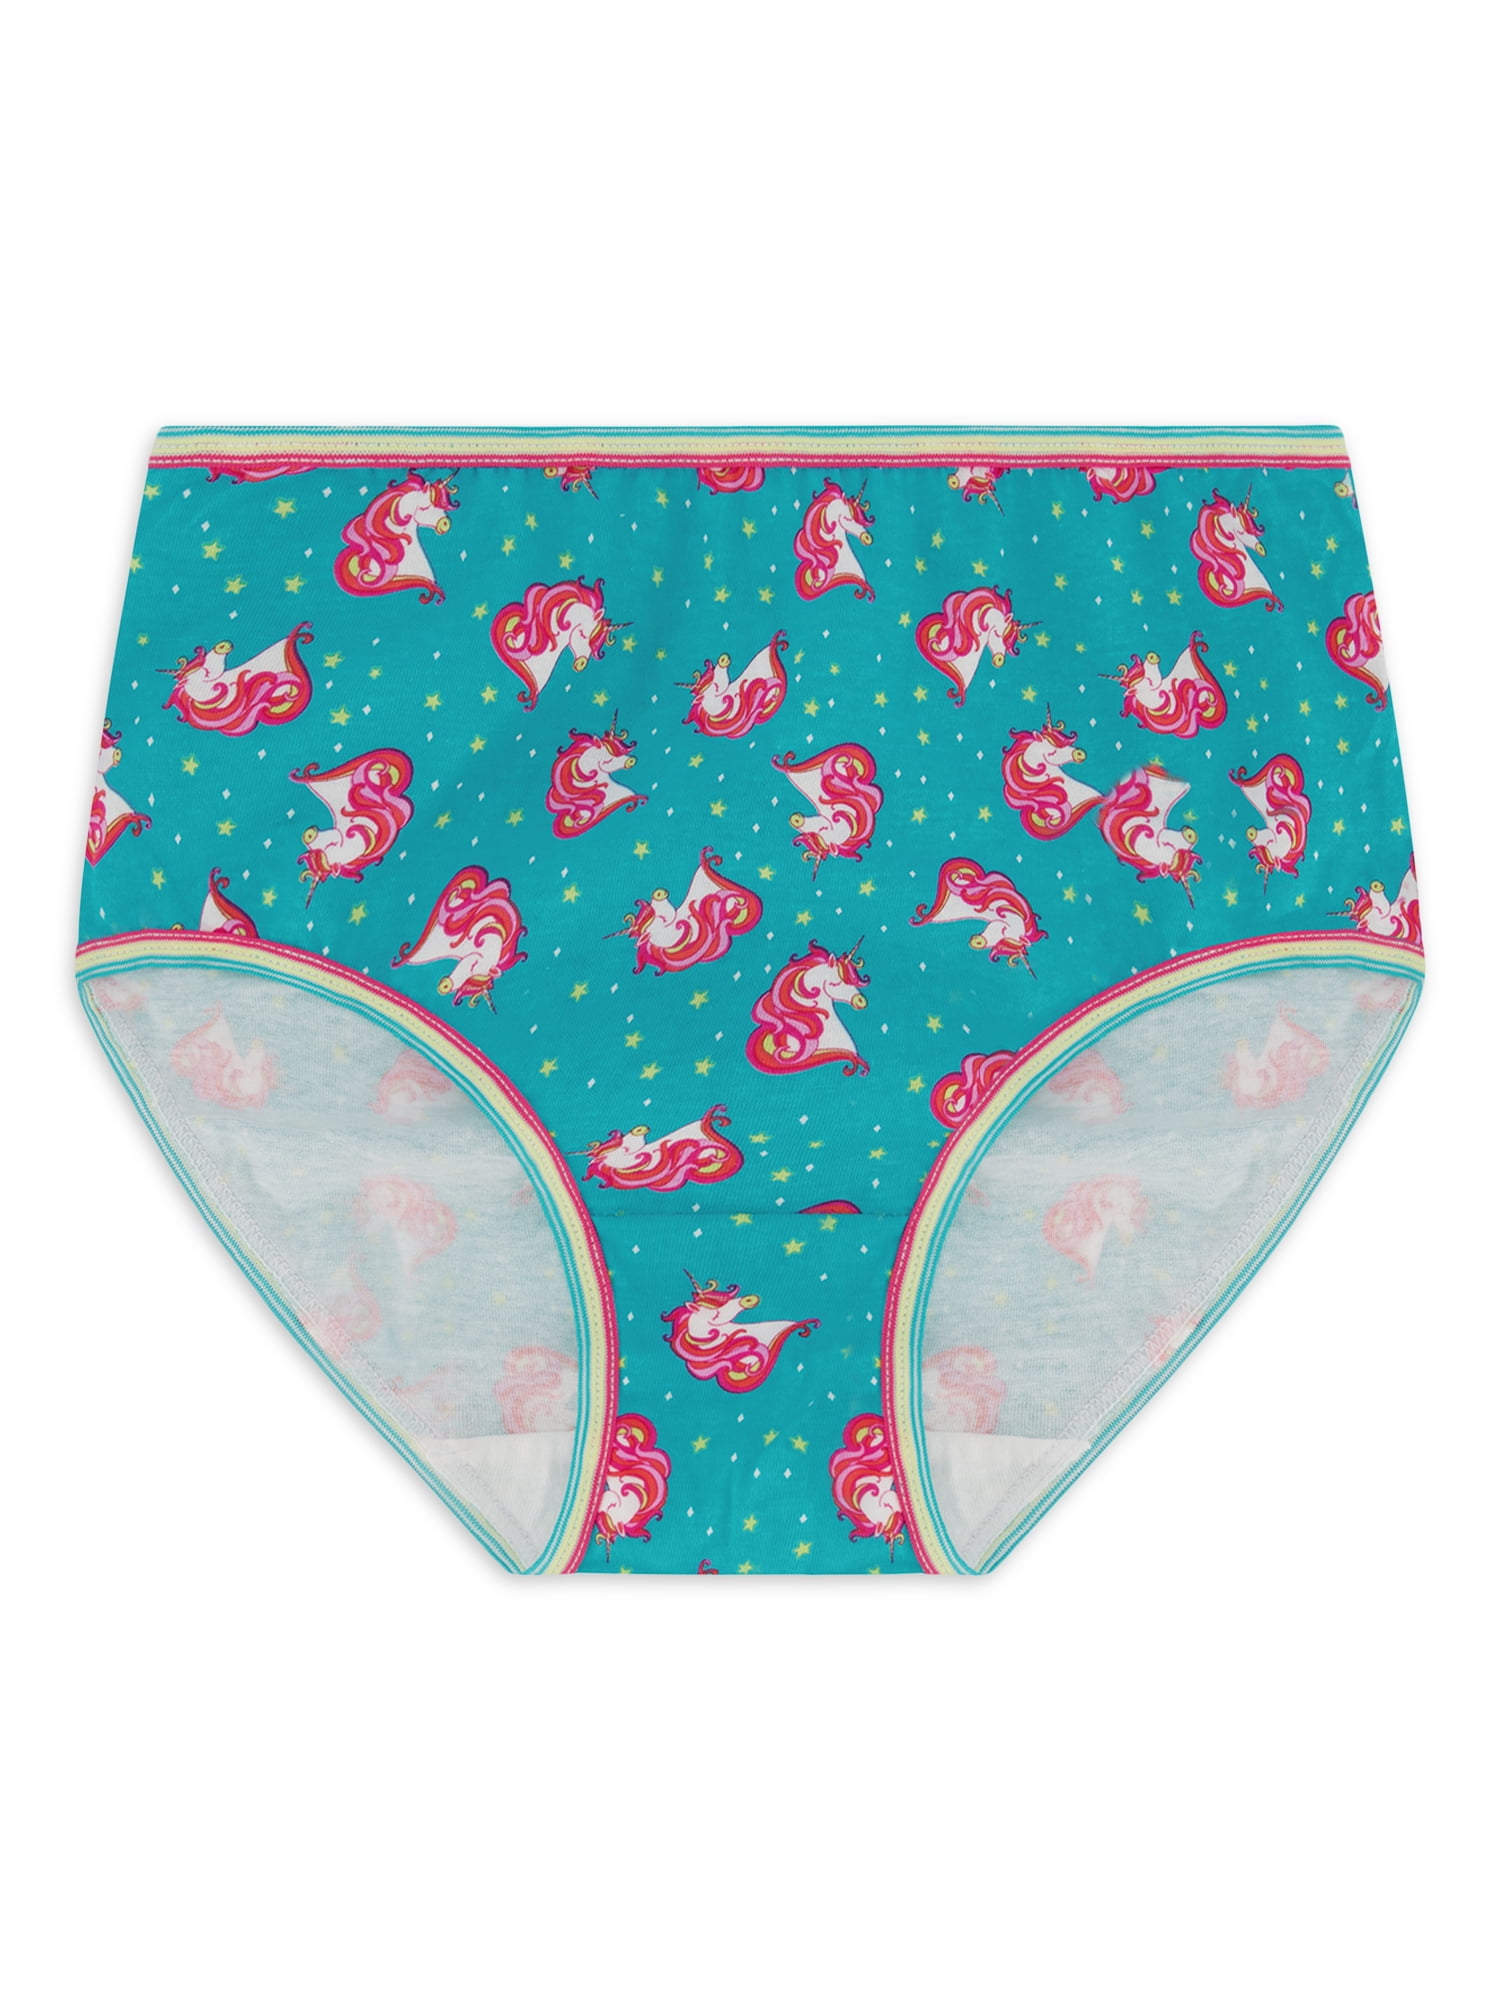 Wonder Nation Girls Underwear, Panties, Brief, Assorted Colors, 10 Pack